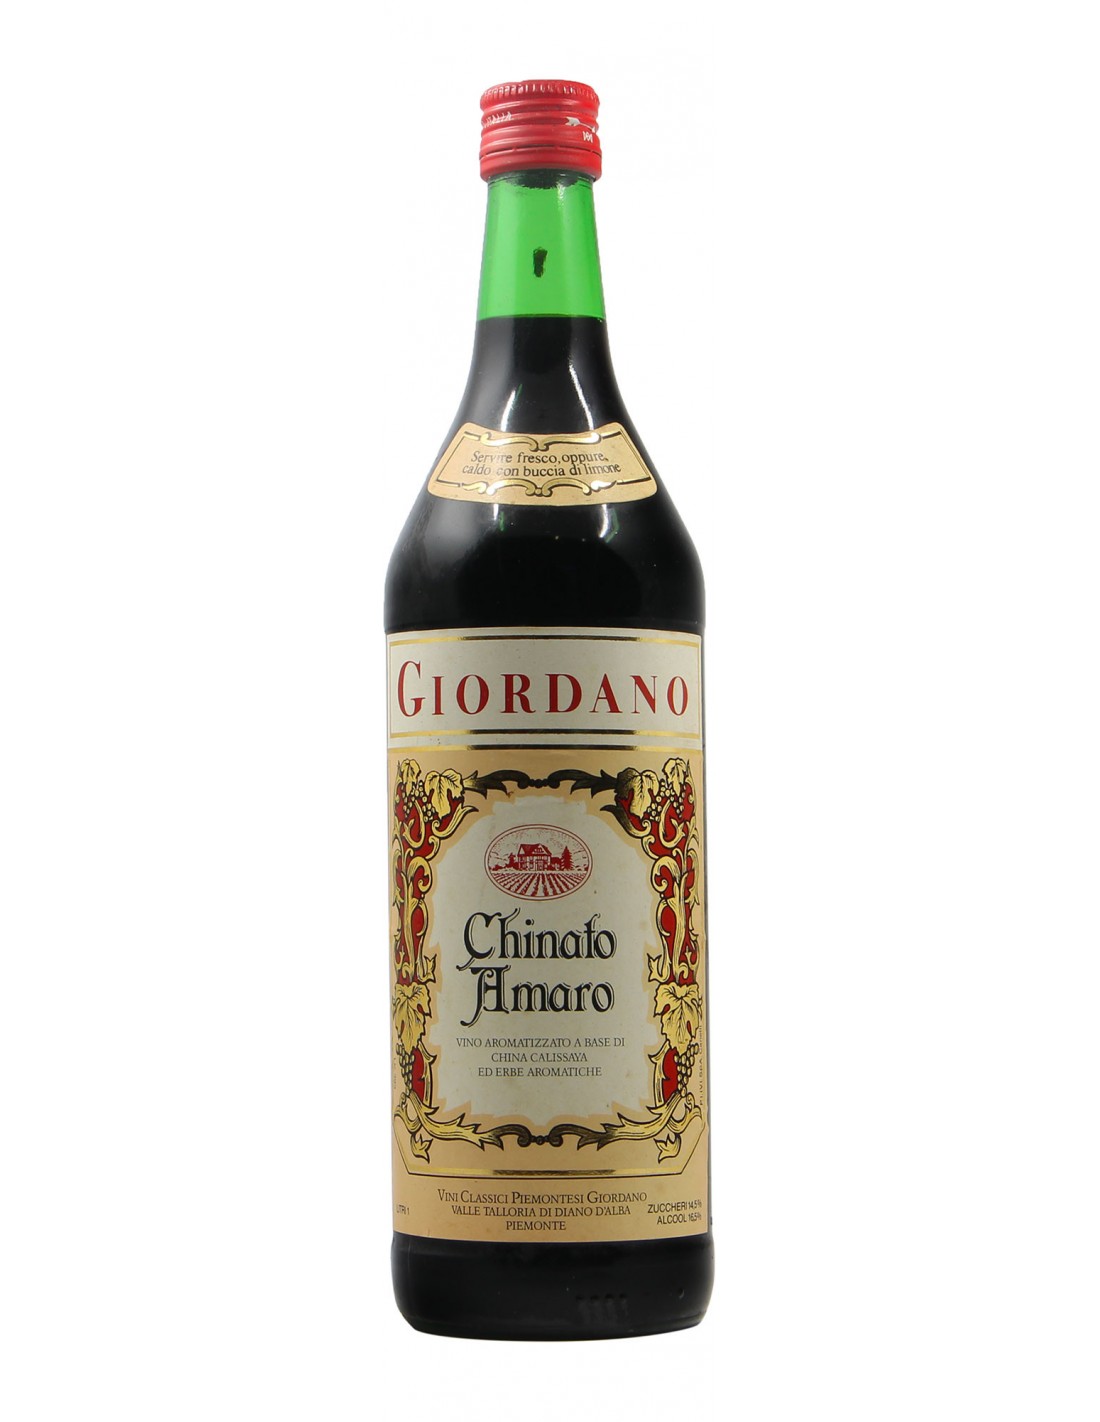 Old Chinato Amaro 1L GIORDANO GRANDI BOTTIGLIE